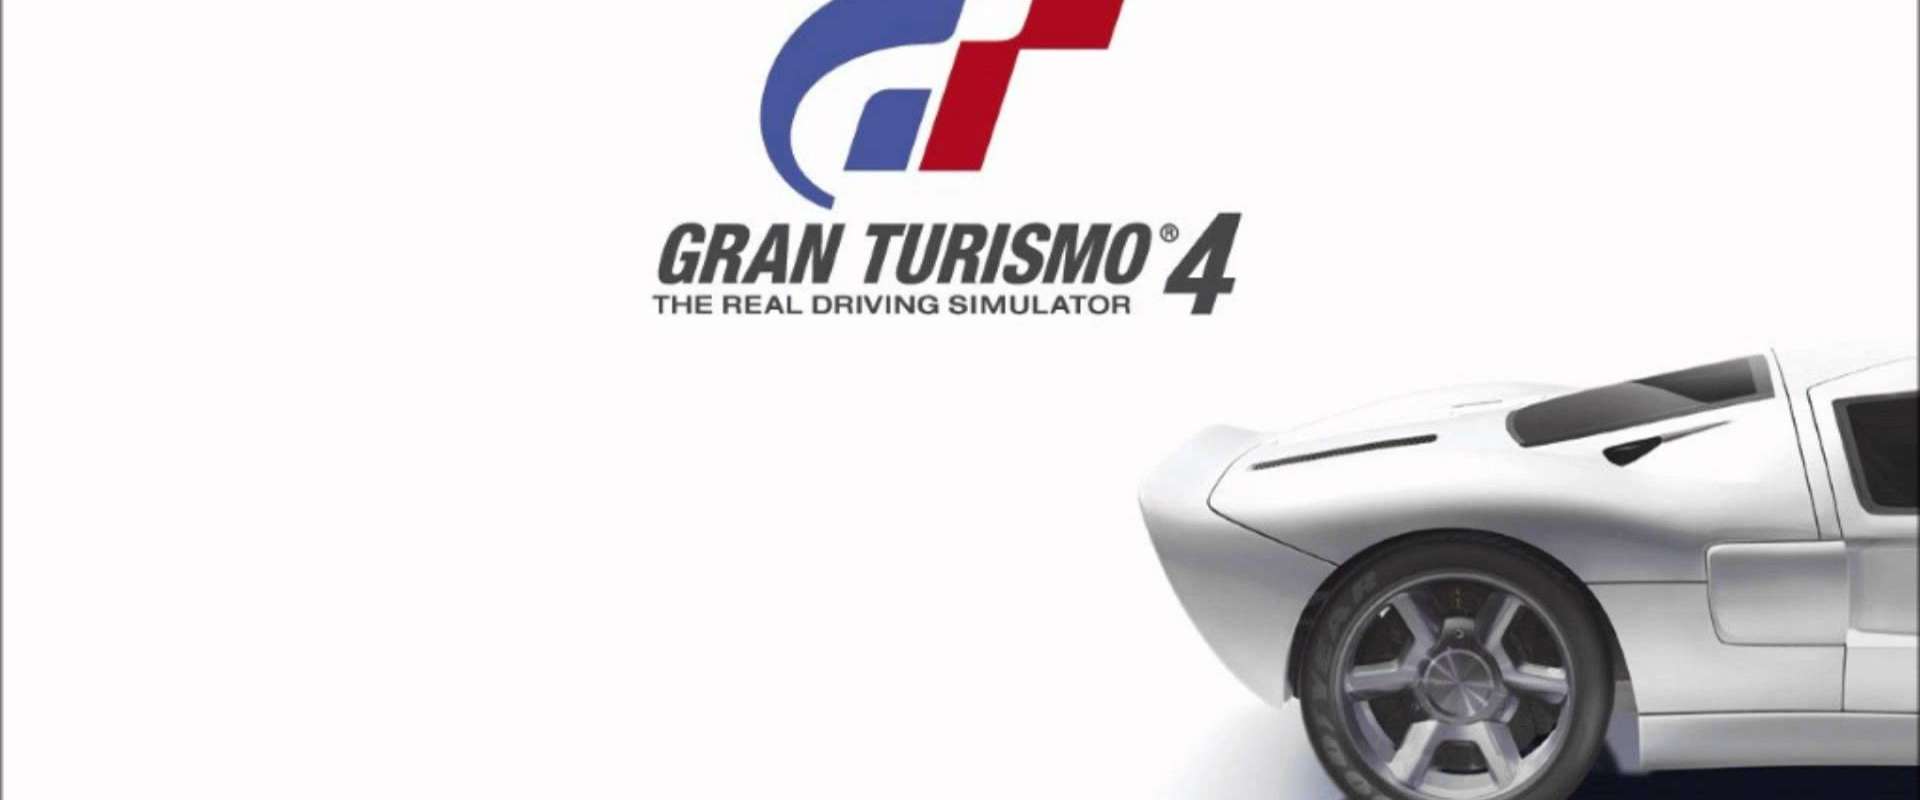 GRAND TURISMO 4 / Mazda BP Falken RX-7 / 720p. - Tribo Gamer